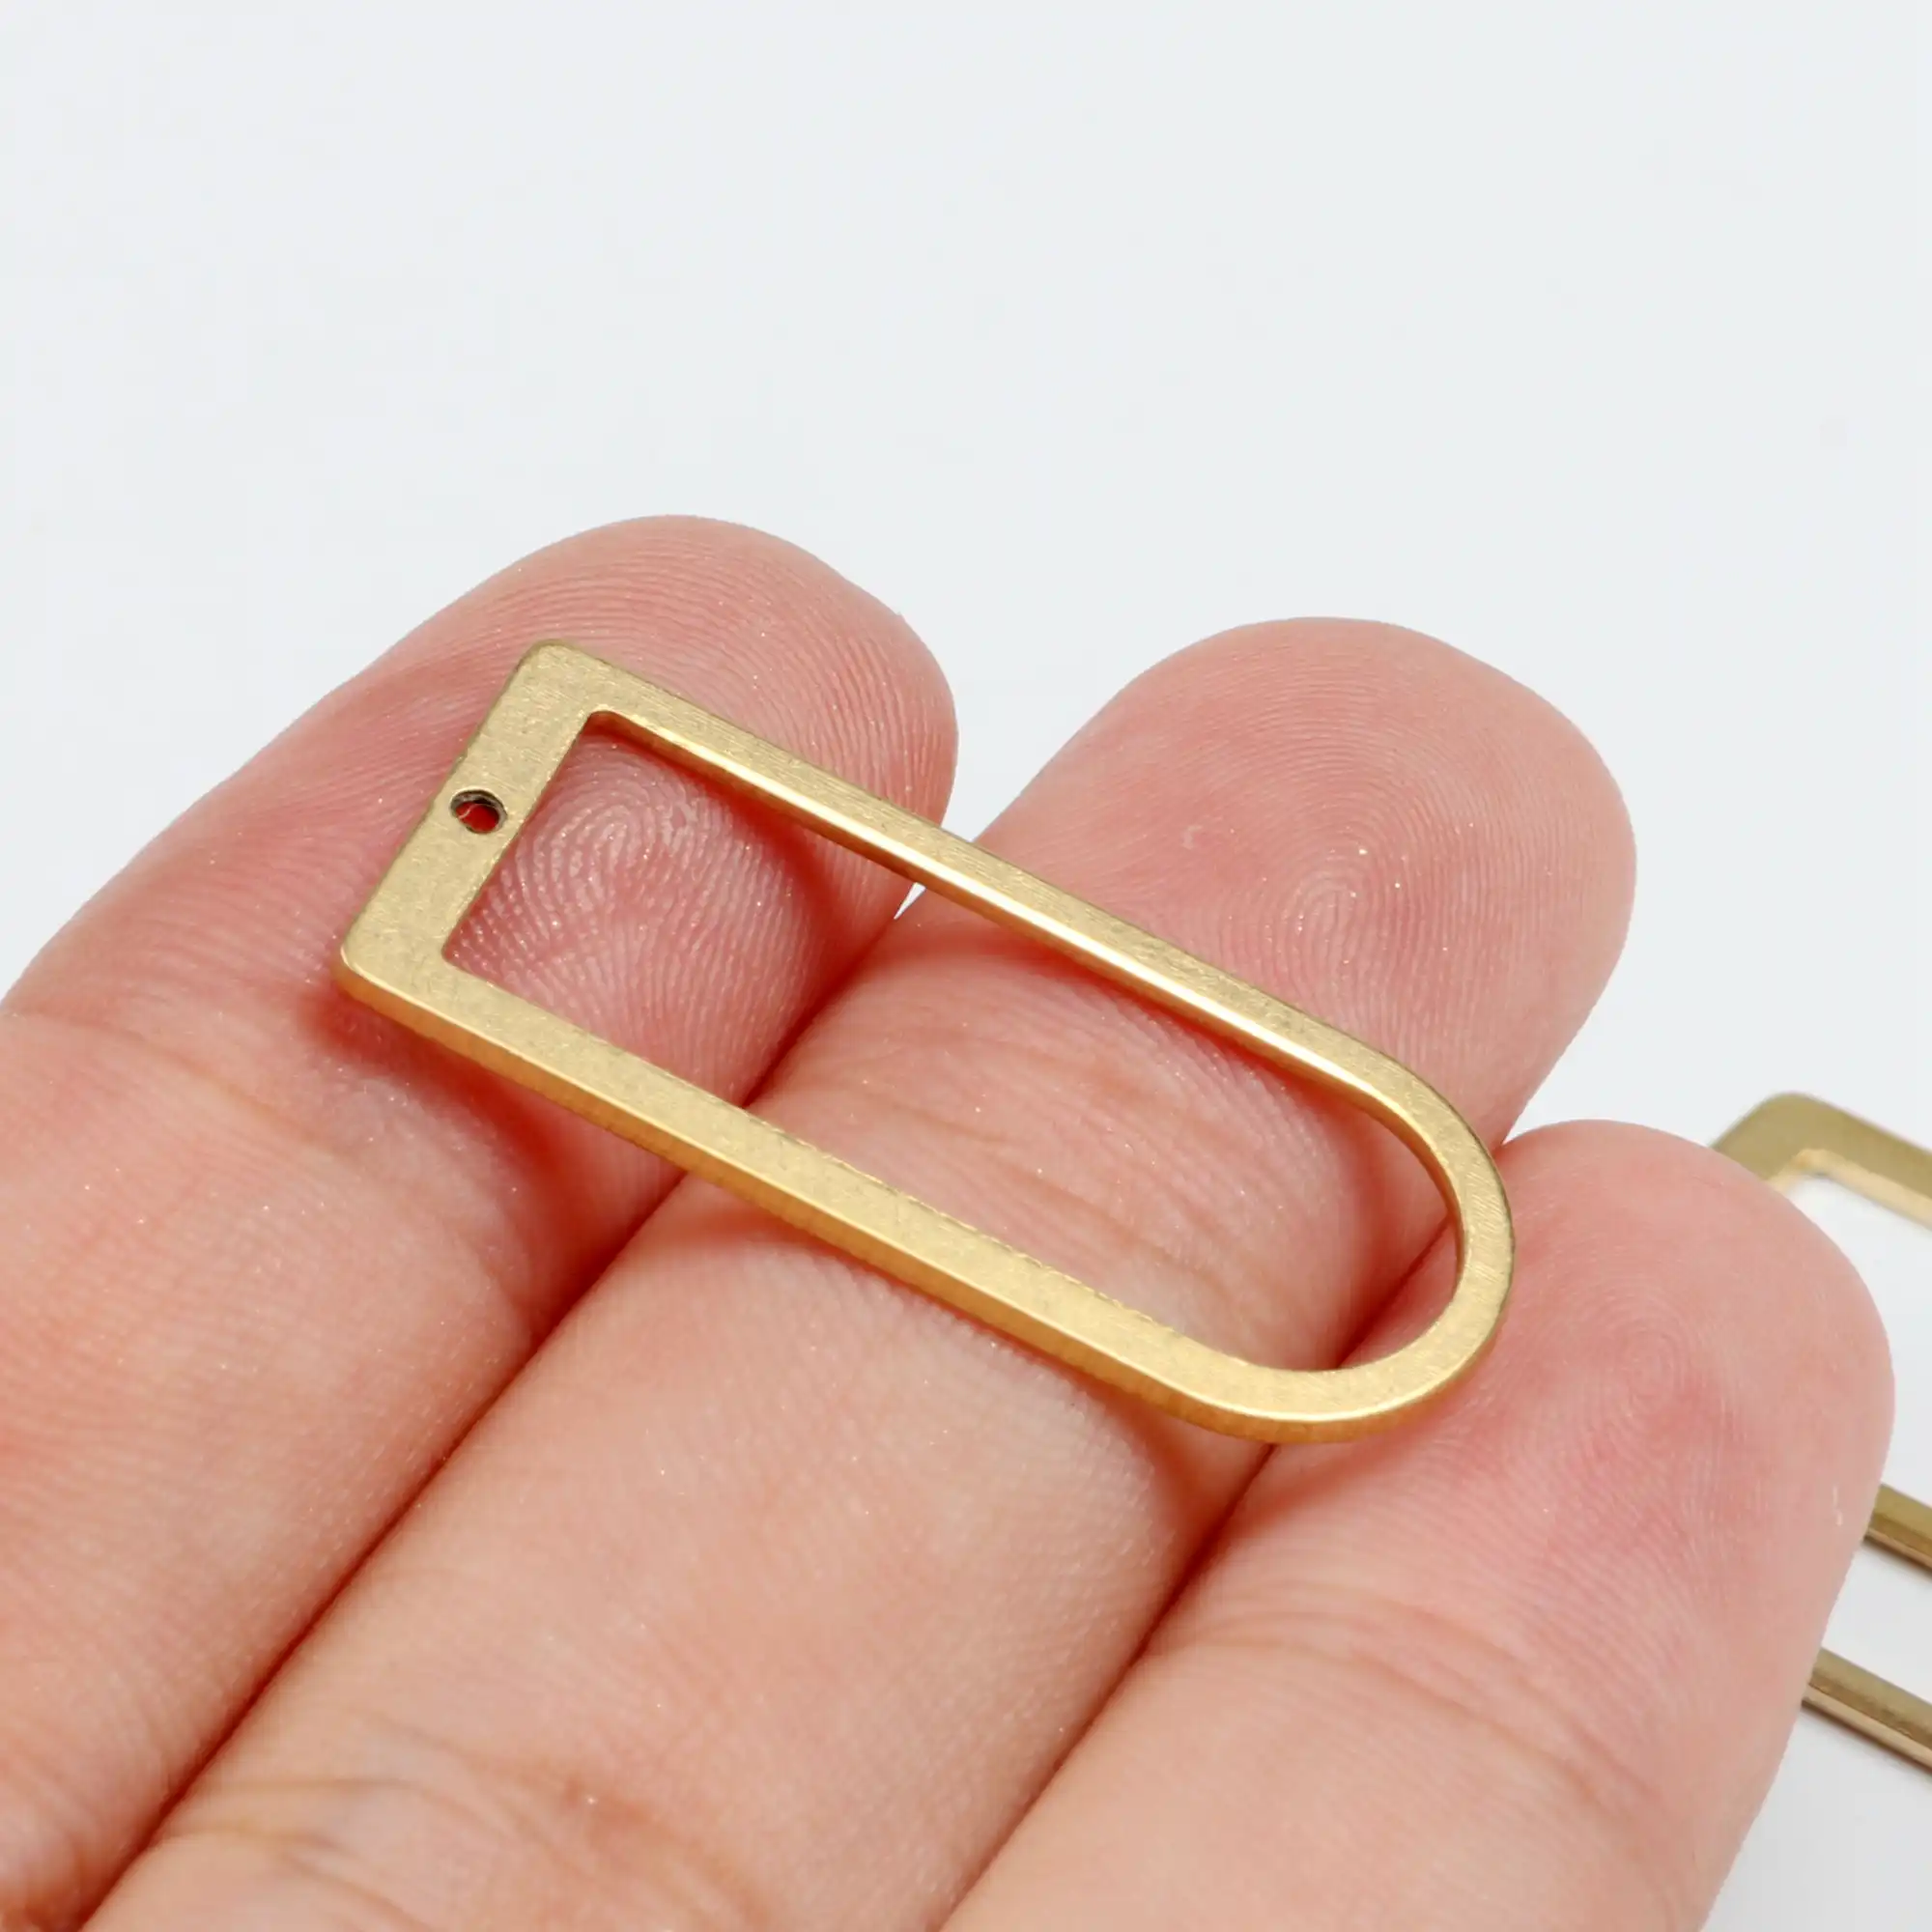 Face Charm,Earrings Findings 43mm x 23mm F1143 20pcs Raw Brass Pendants